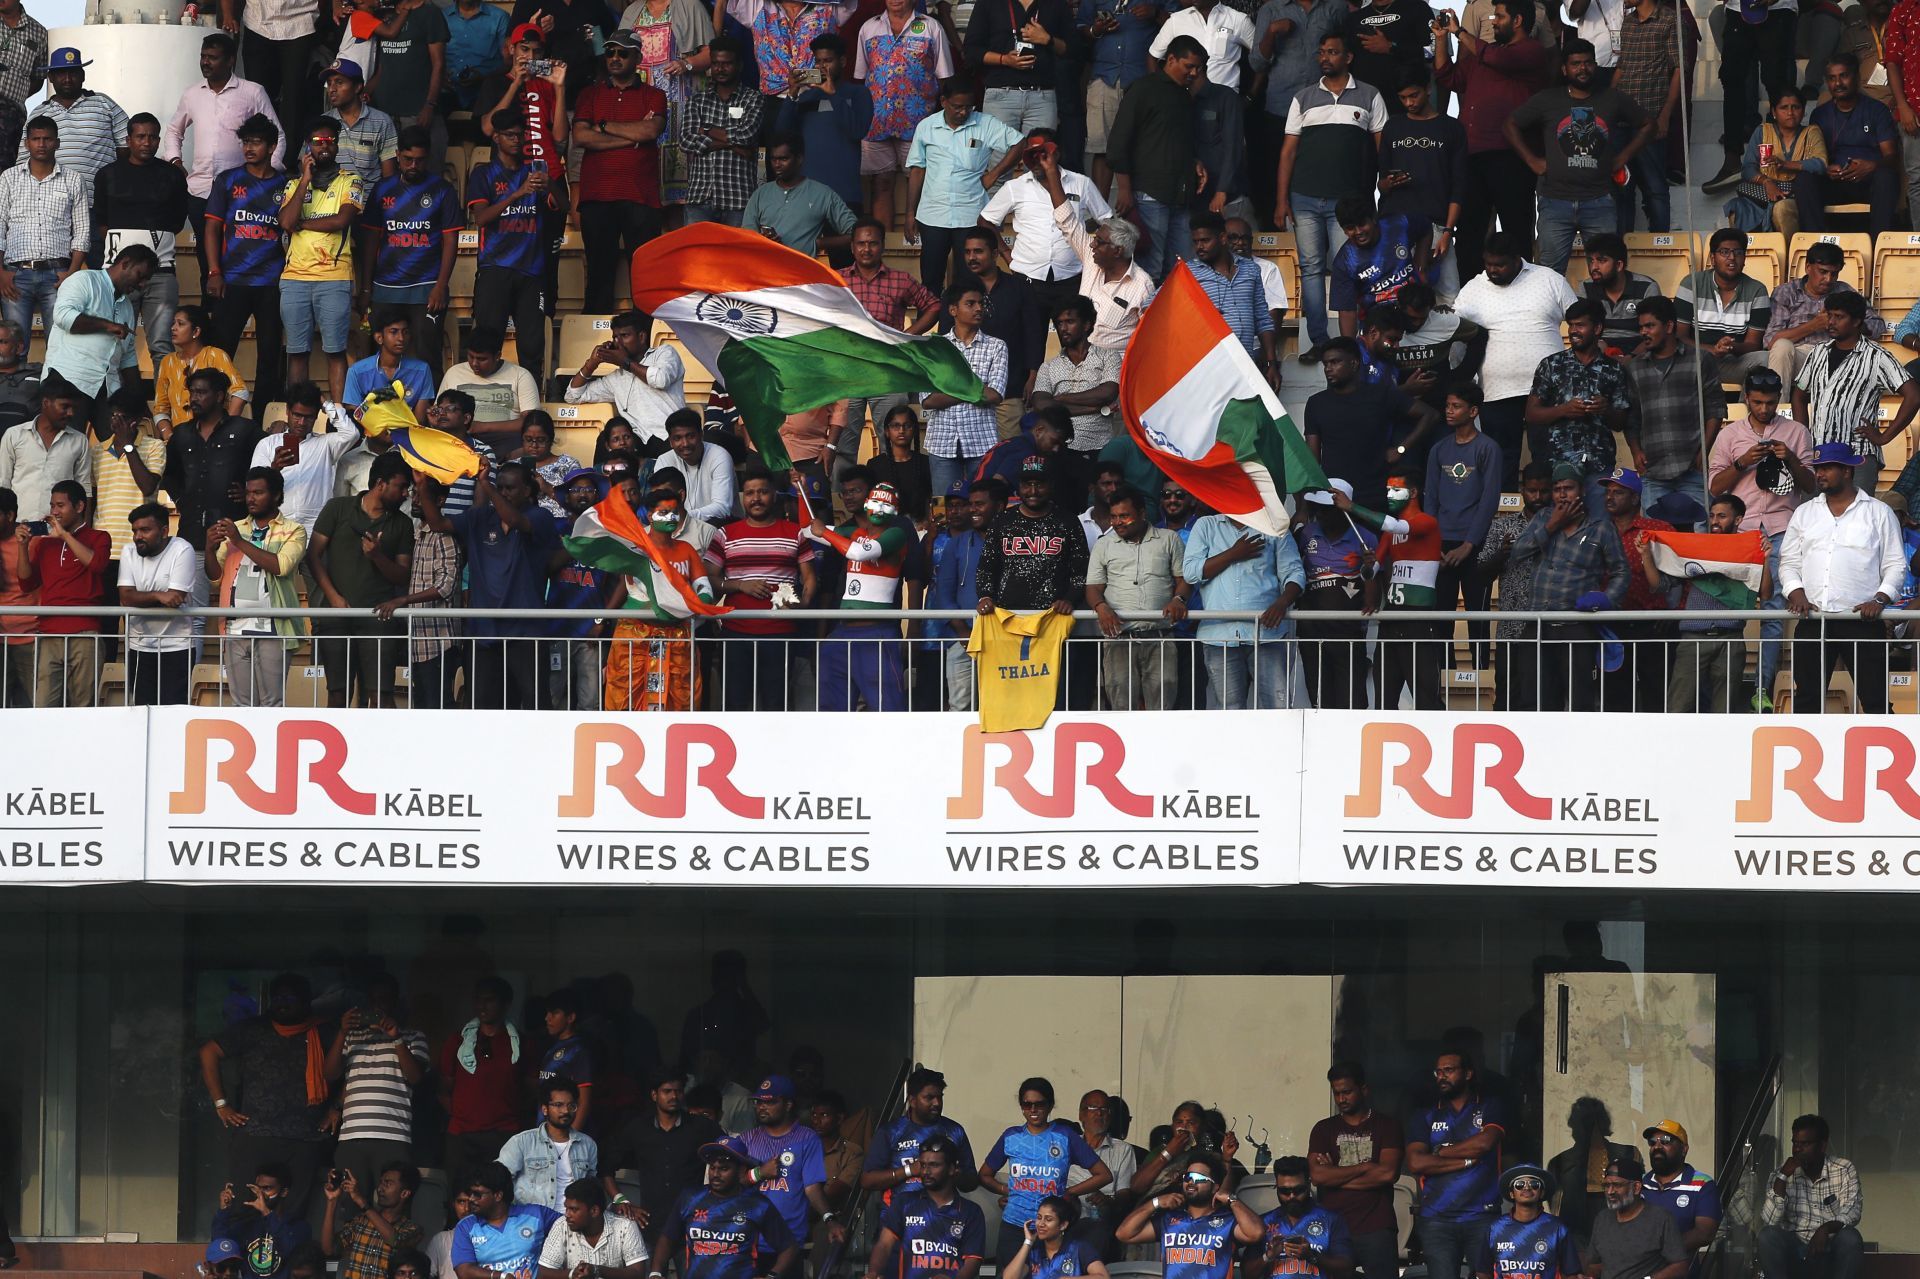 India v Australia - 3rd ODI